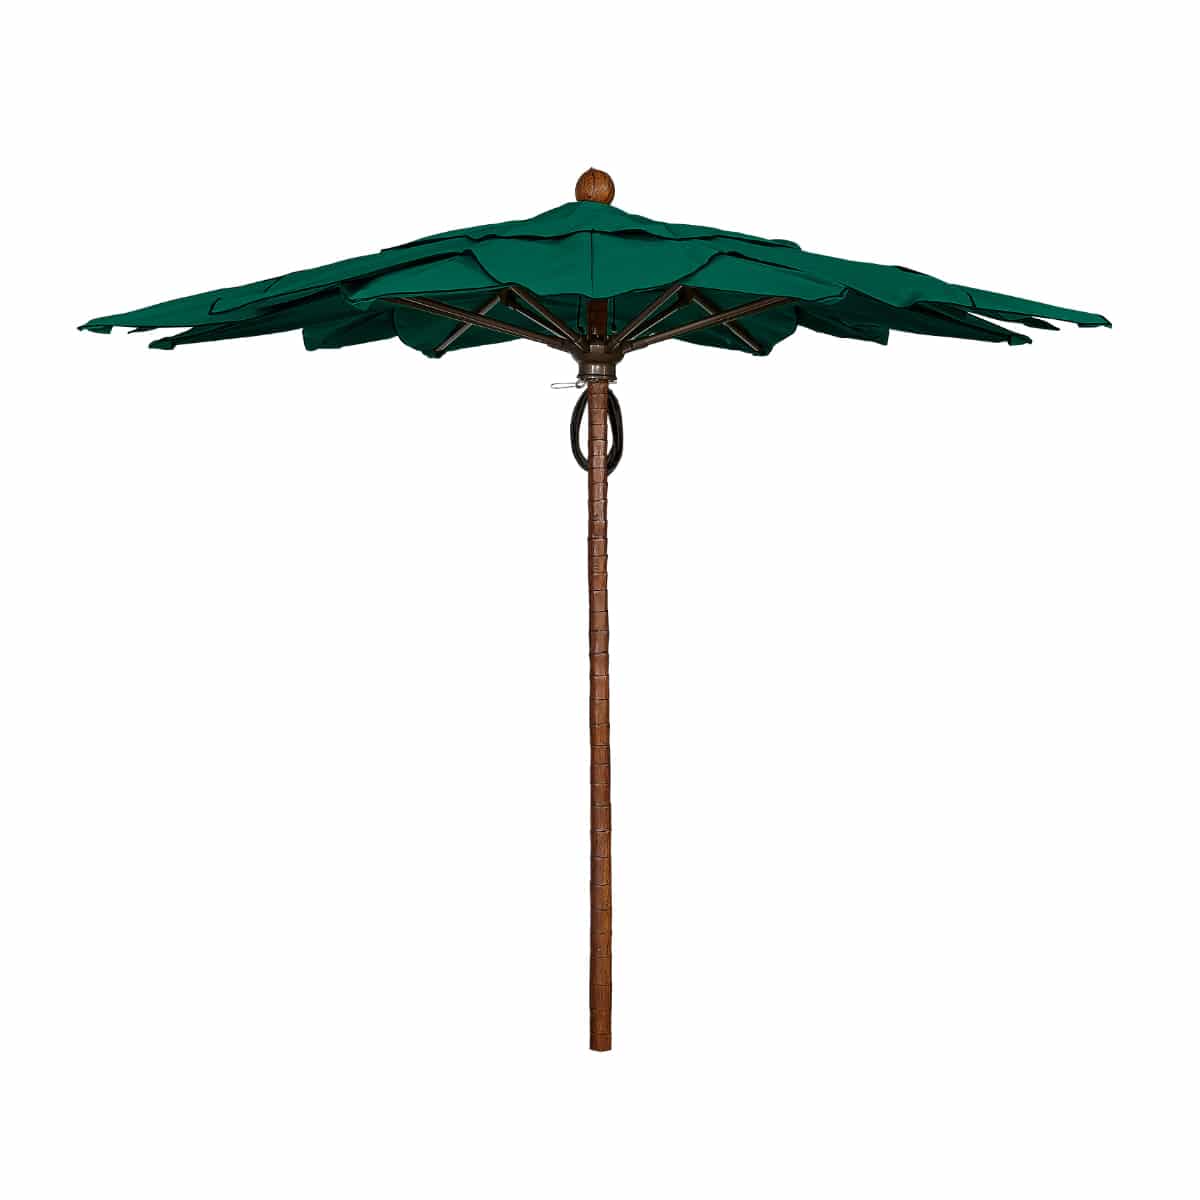 Построенный из фибры пальмовый зонт с центральной опорой